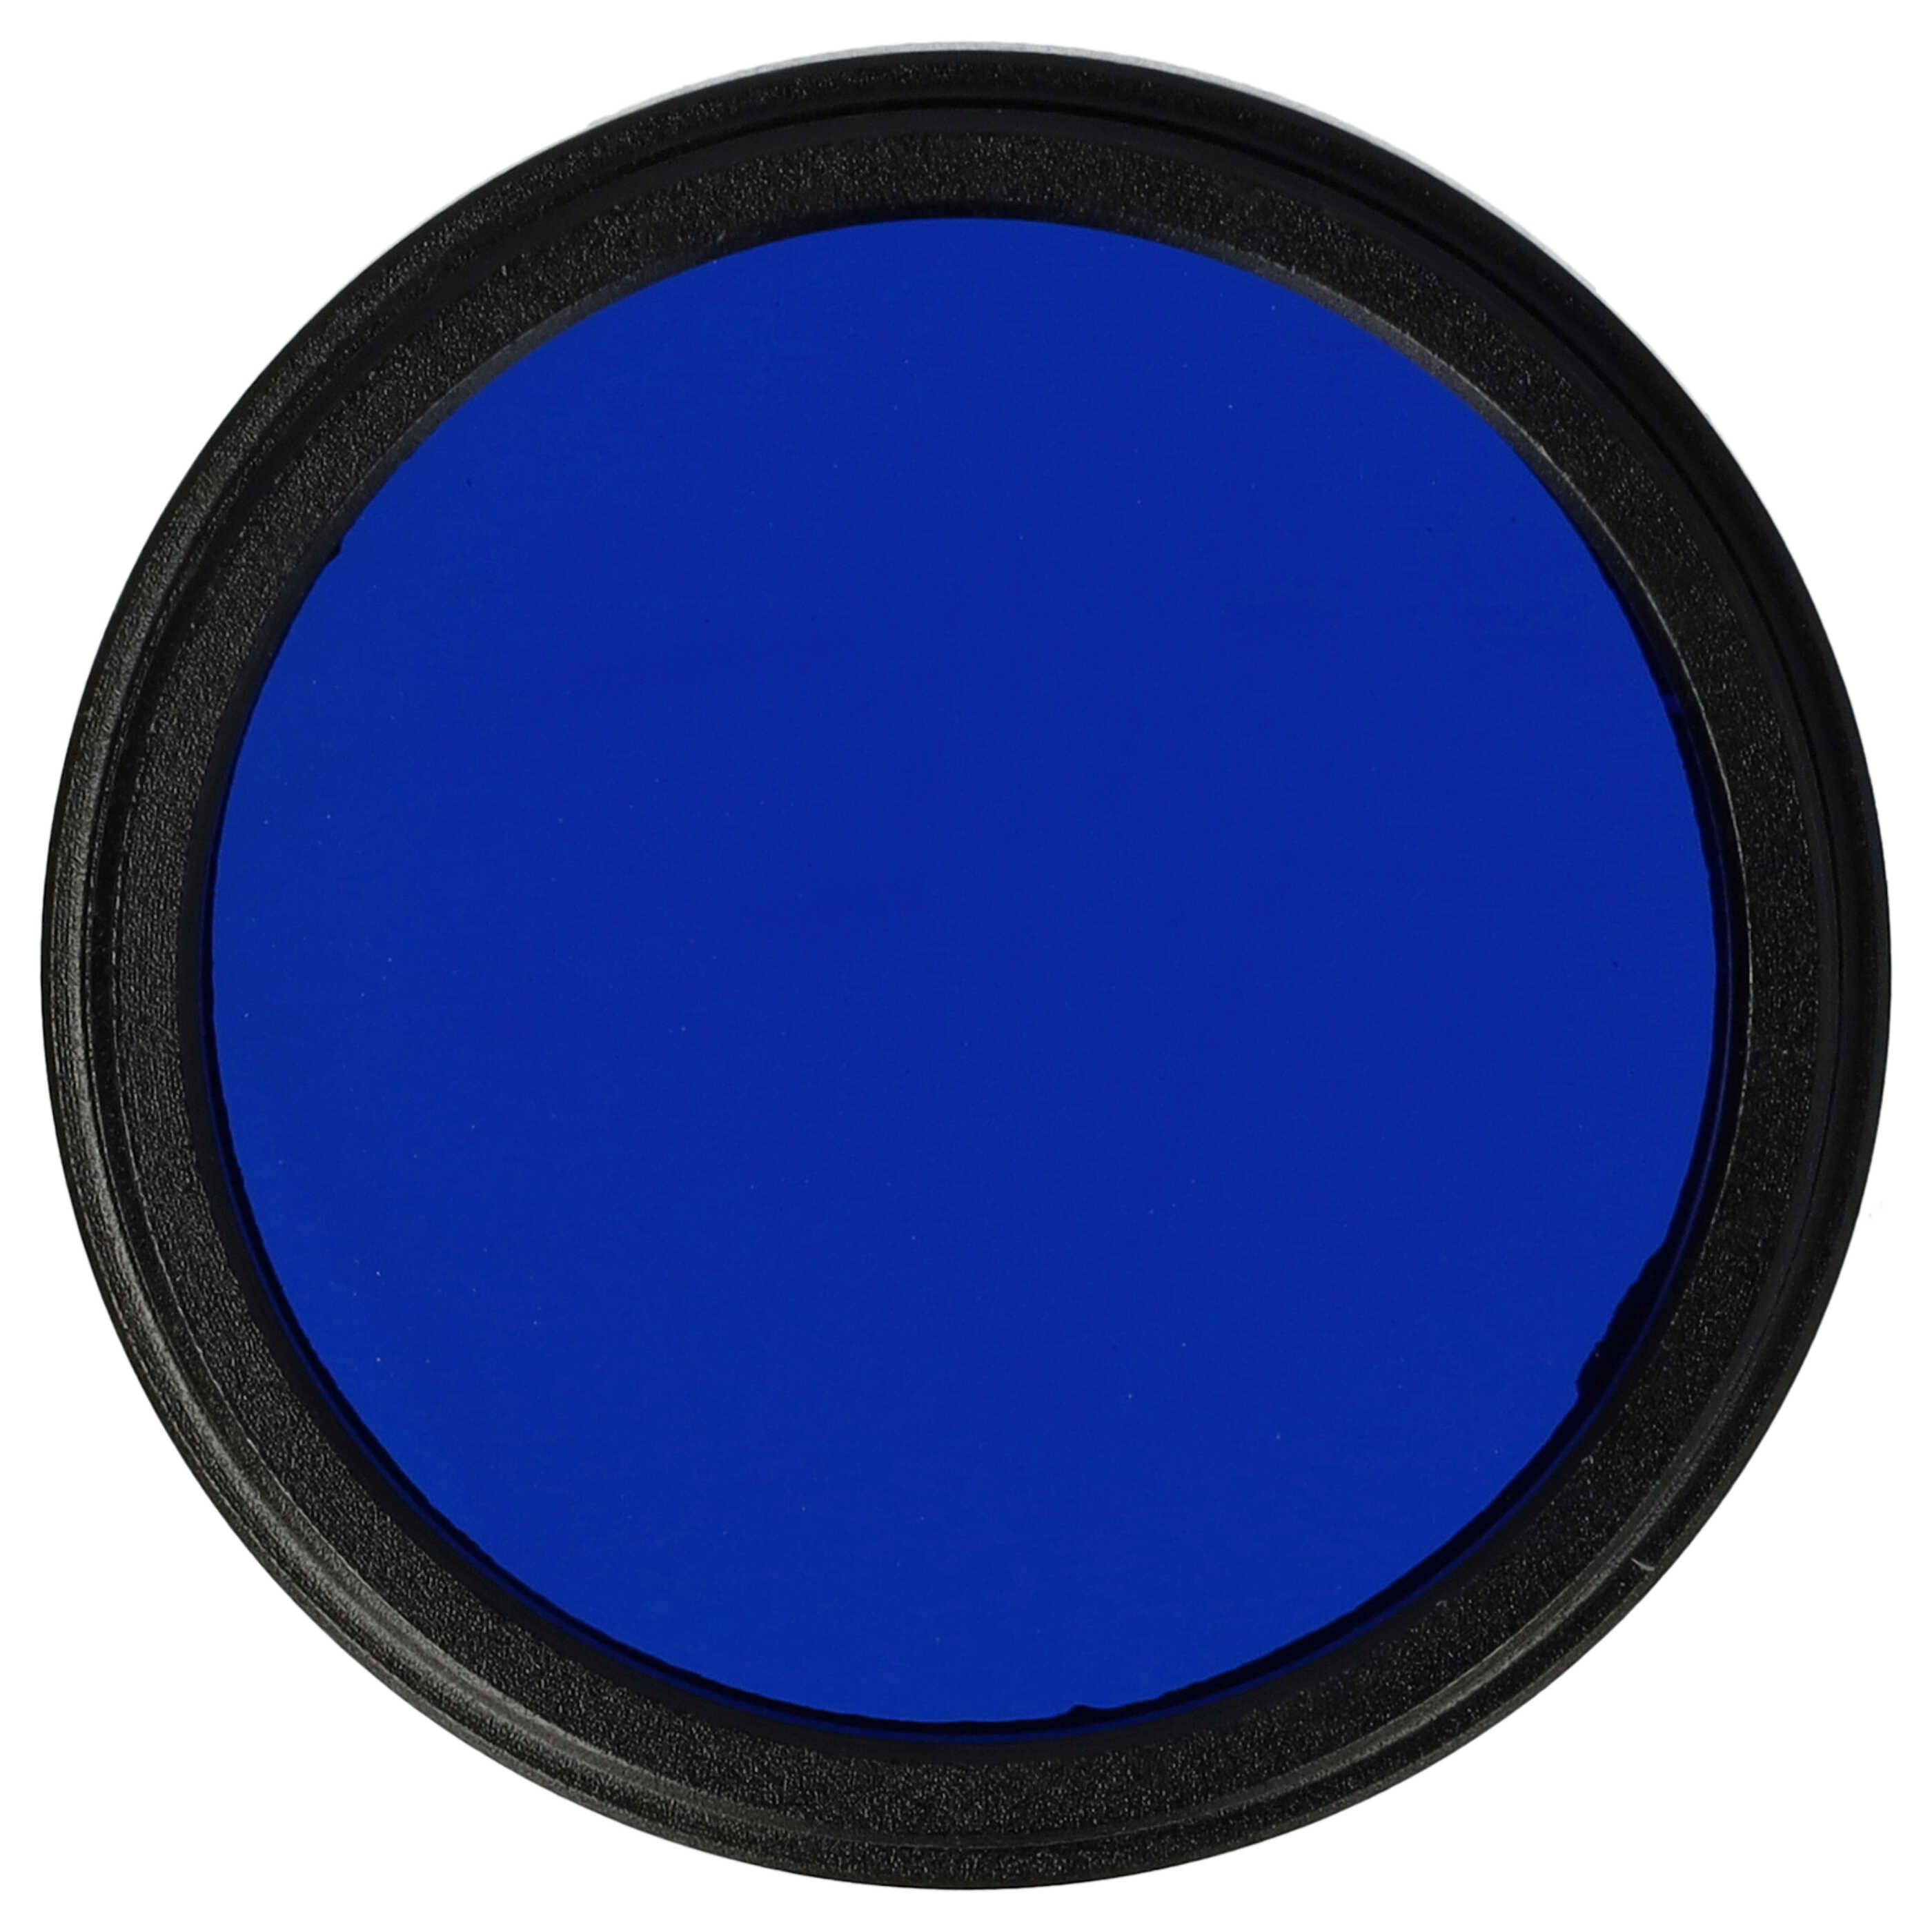 Filtre de couleur bleu pour objectifs d'appareils photo de 37 mm - Filtre bleu